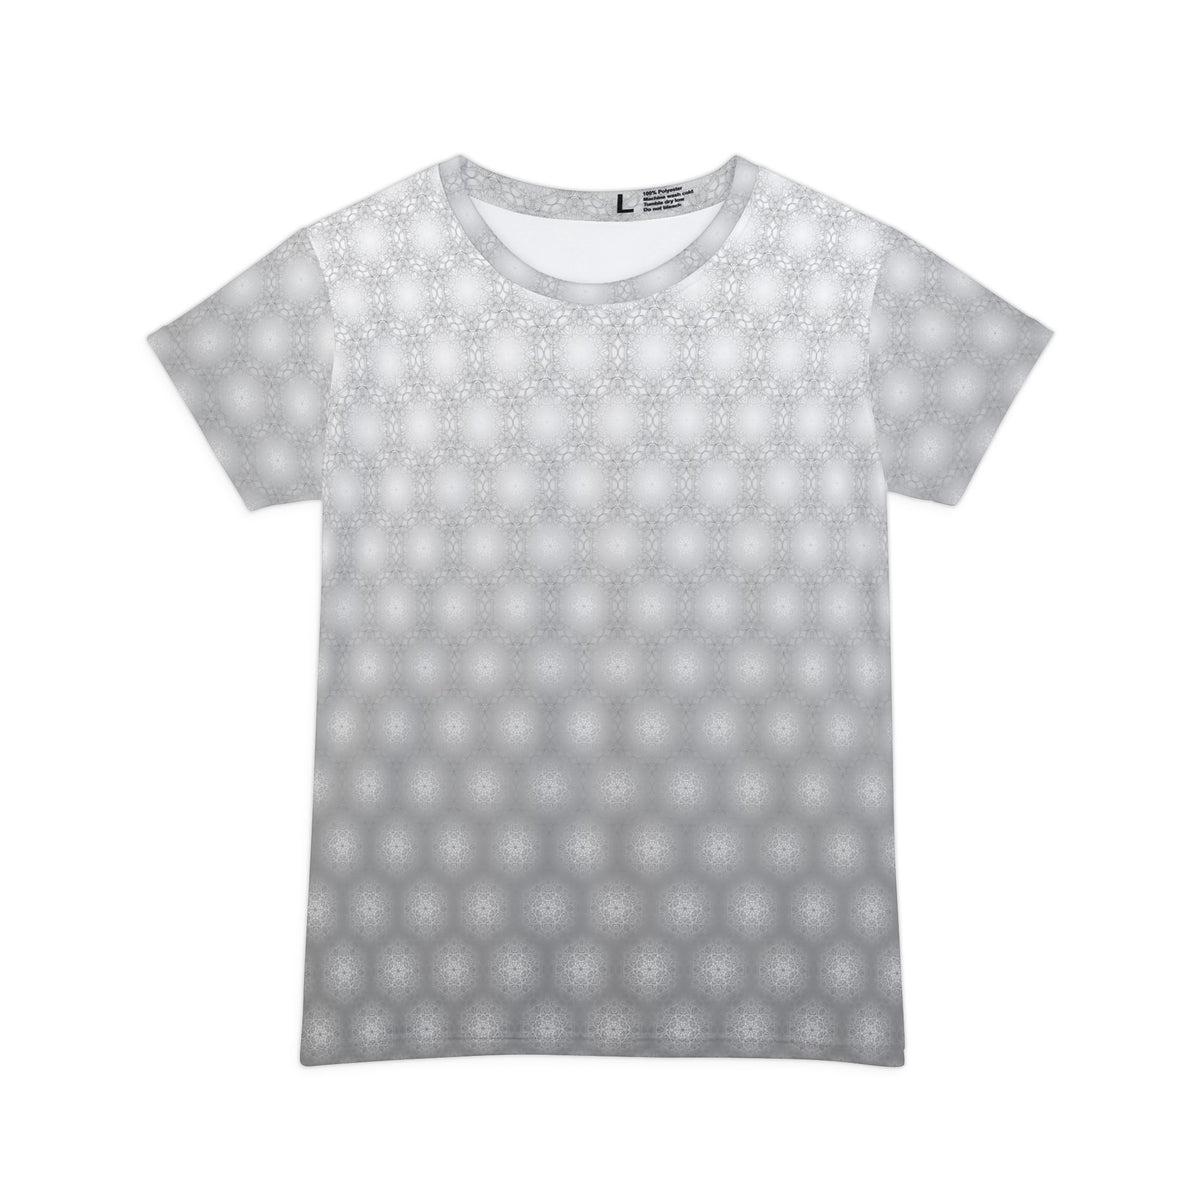 Metatrons Cube Fade - Women's Short Sleeve Shirt